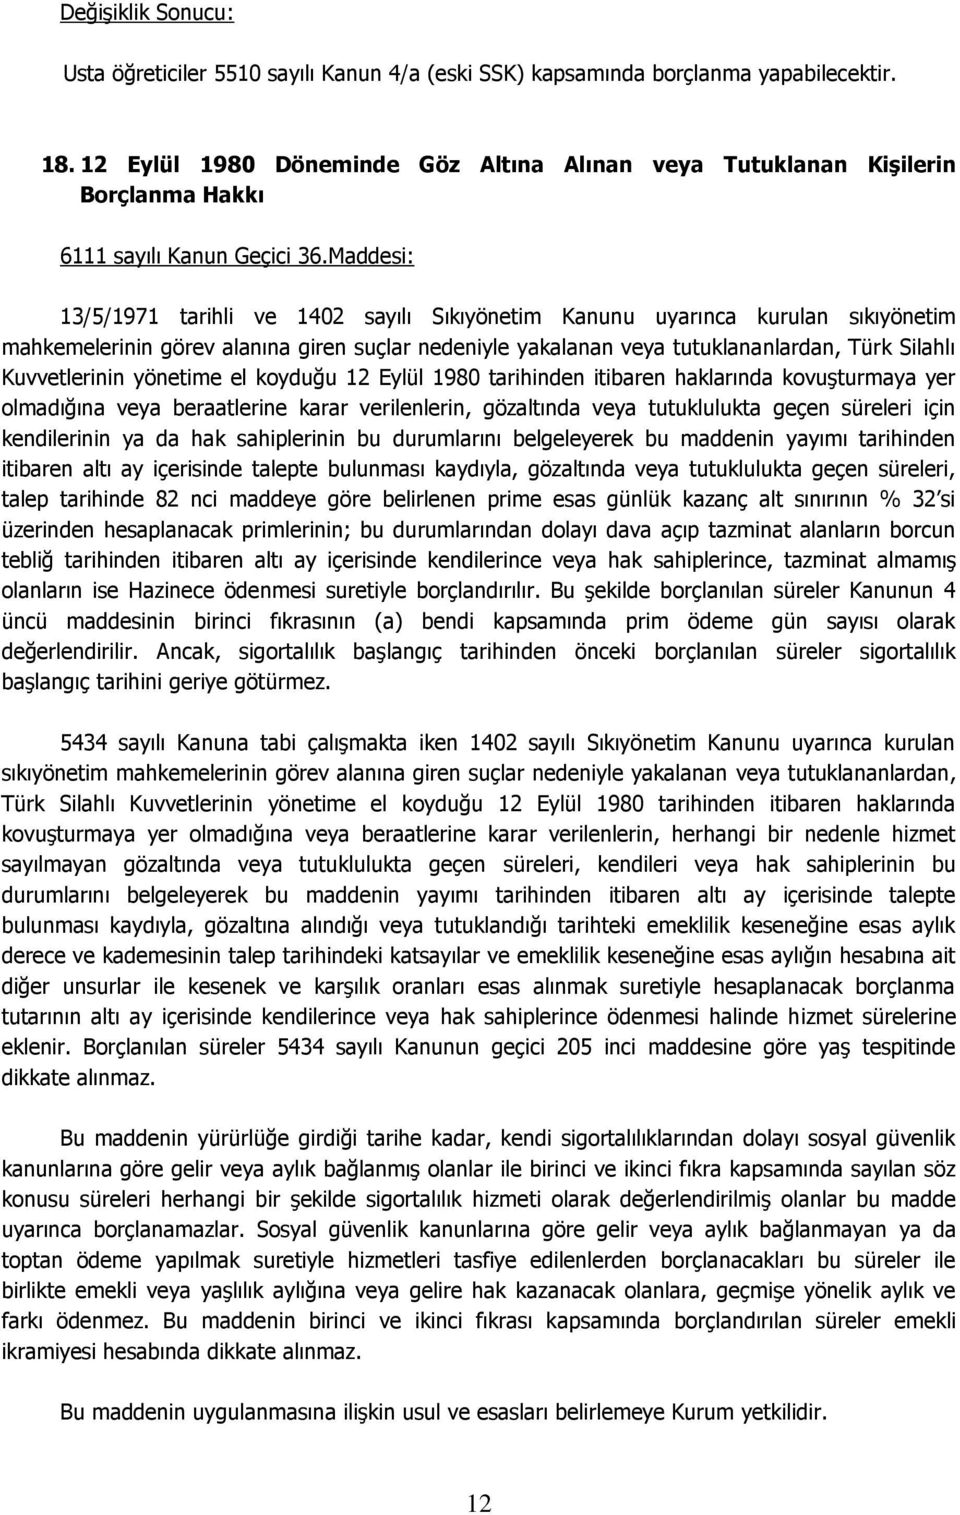 Maddesi: 13/5/1971 tarihli ve 1402 sayılı Sıkıyönetim Kanunu uyarınca kurulan sıkıyönetim mahkemelerinin görev alanına giren suçlar nedeniyle yakalanan veya tutuklananlardan, Türk Silahlı